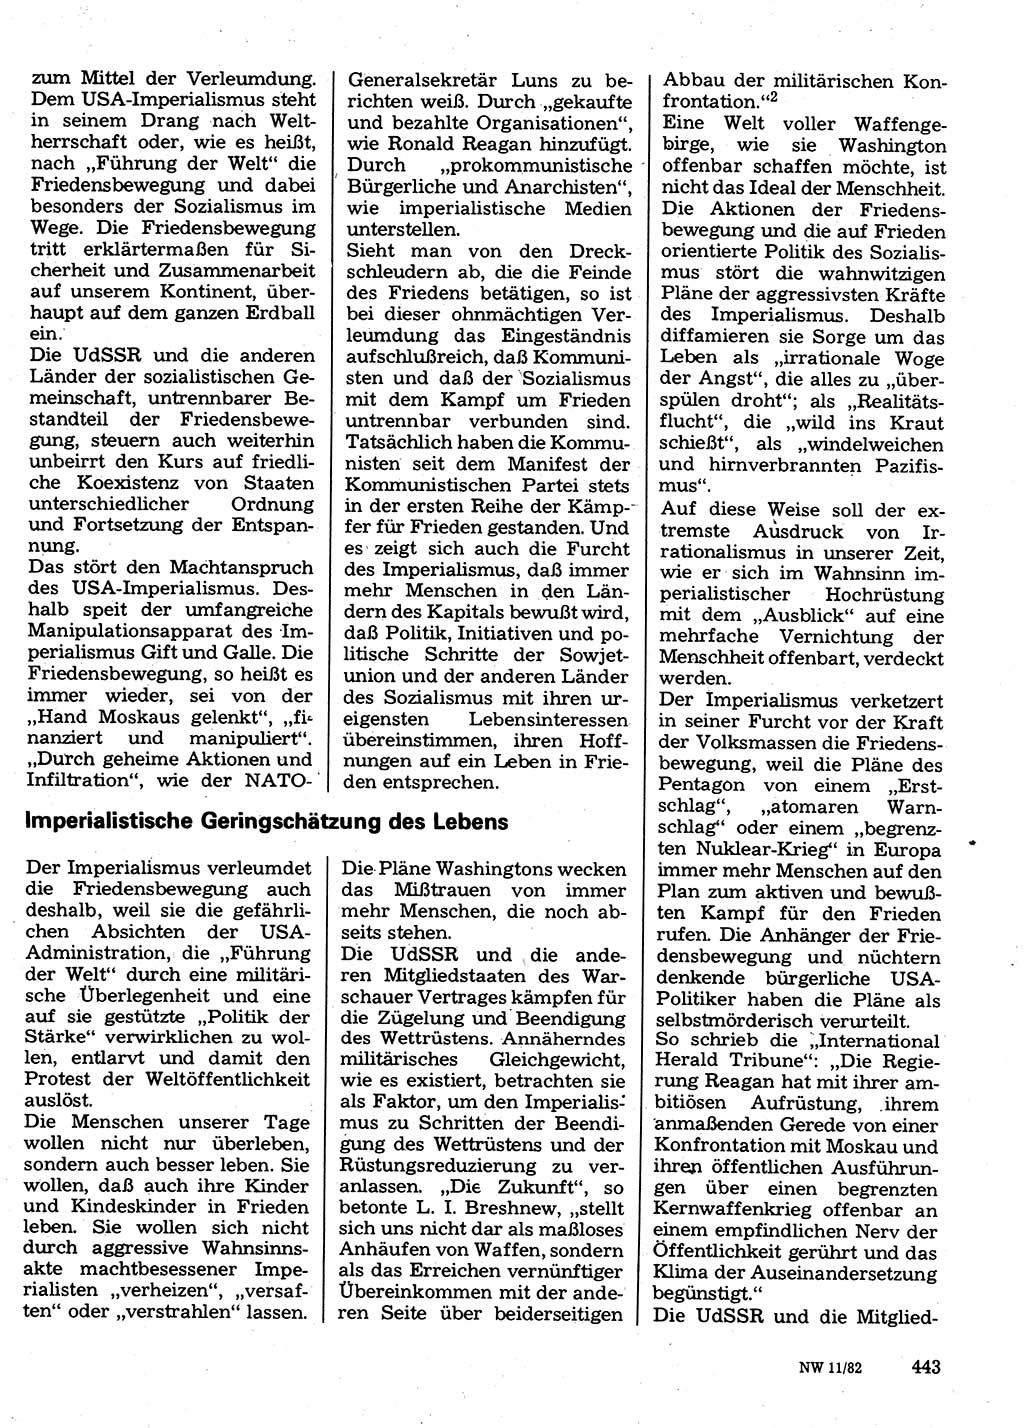 Neuer Weg (NW), Organ des Zentralkomitees (ZK) der SED (Sozialistische Einheitspartei Deutschlands) für Fragen des Parteilebens, 37. Jahrgang [Deutsche Demokratische Republik (DDR)] 1982, Seite 443 (NW ZK SED DDR 1982, S. 443)